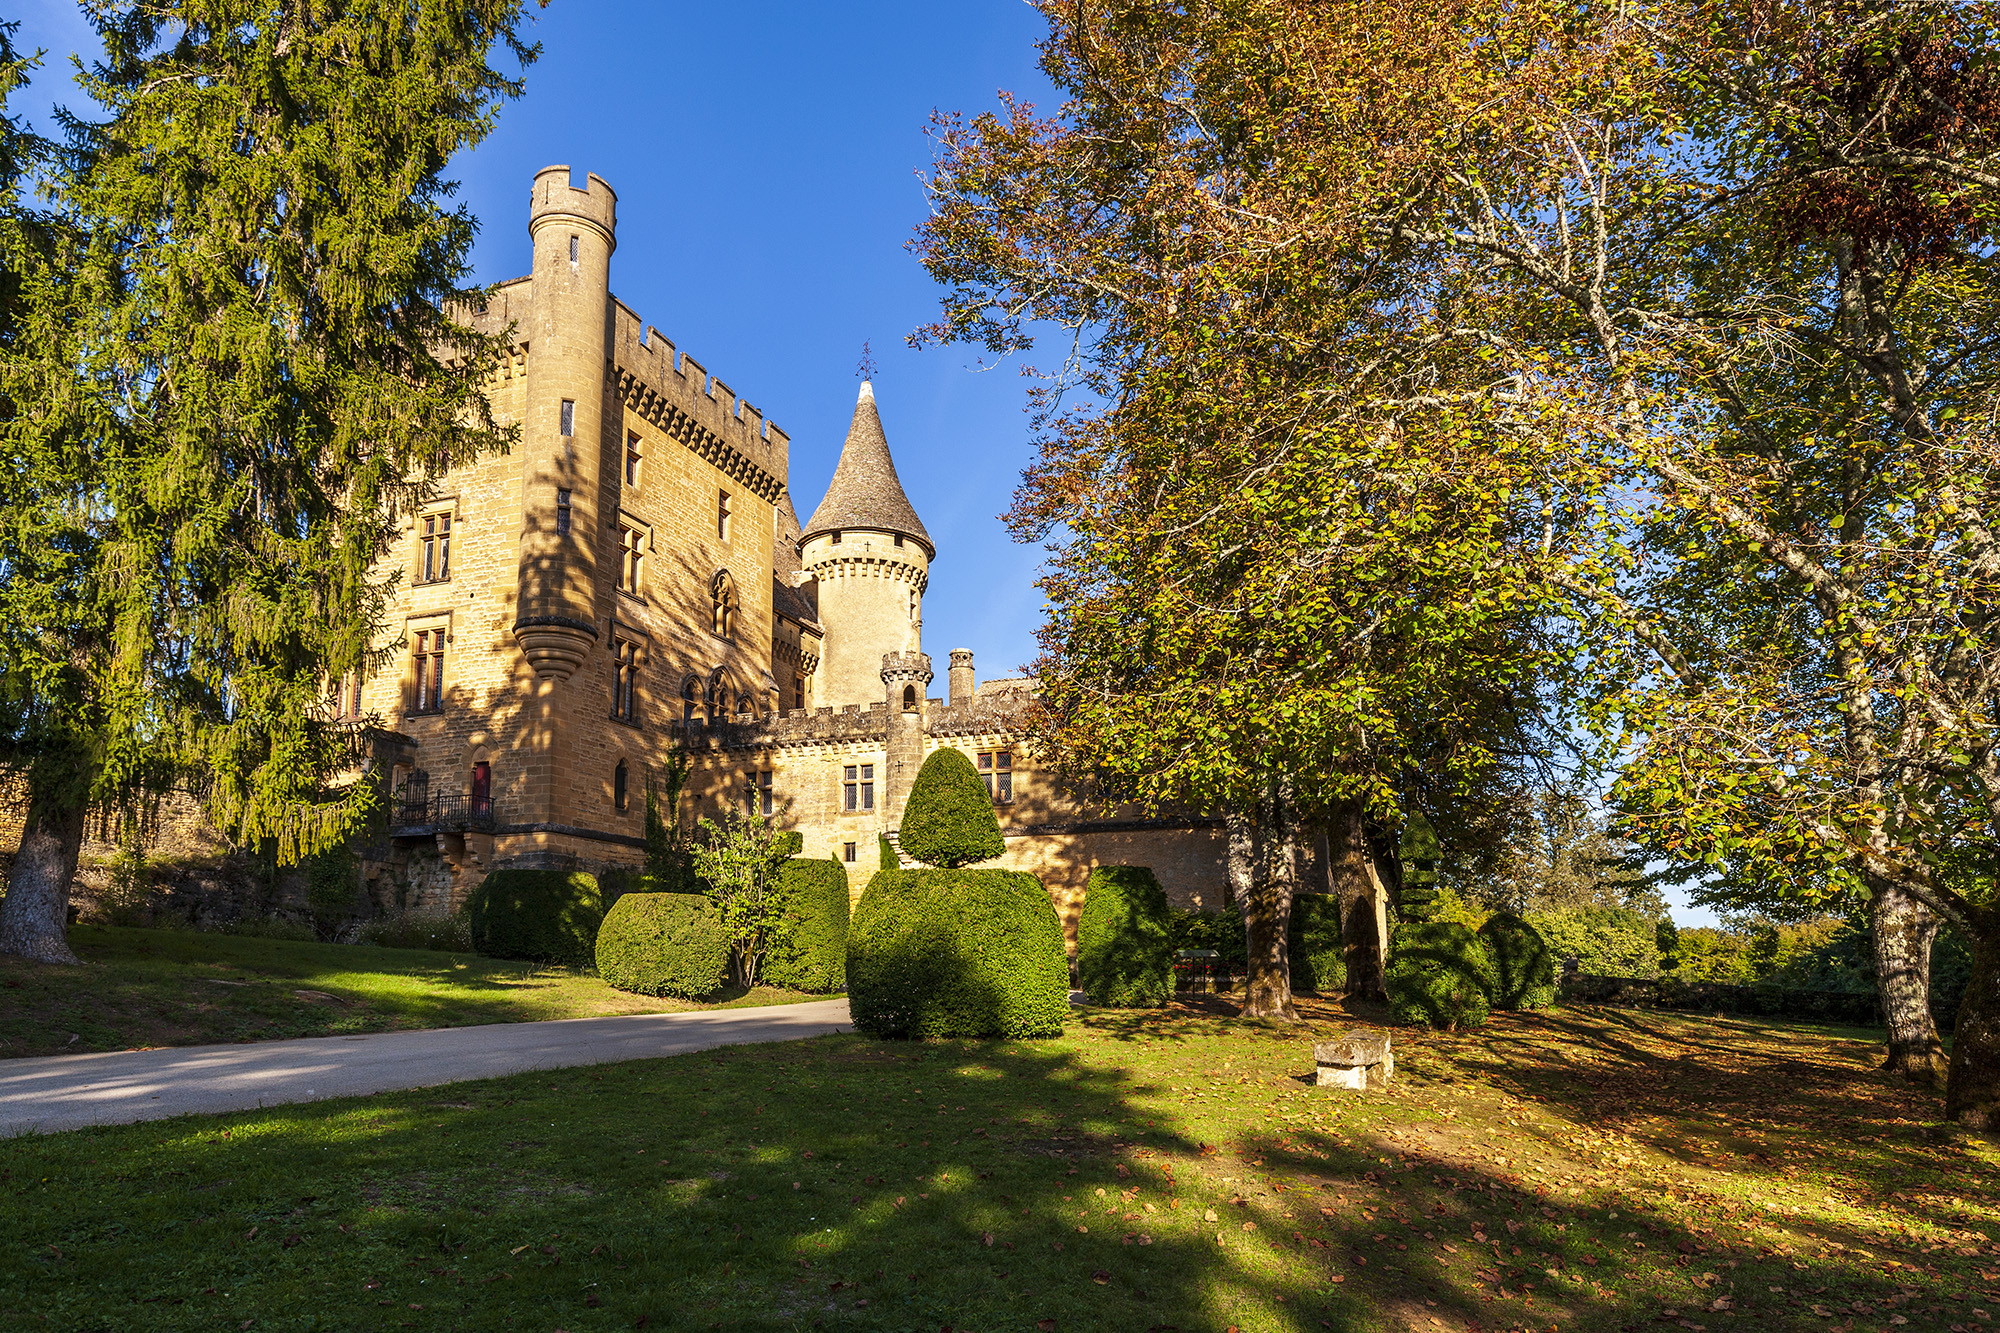 ©Giovanni Tagini. Château de Puymartin, un bellissimo castello privato a Sarlat, famoso perchè si dice che risiede il fantasma della Dama Bianca.